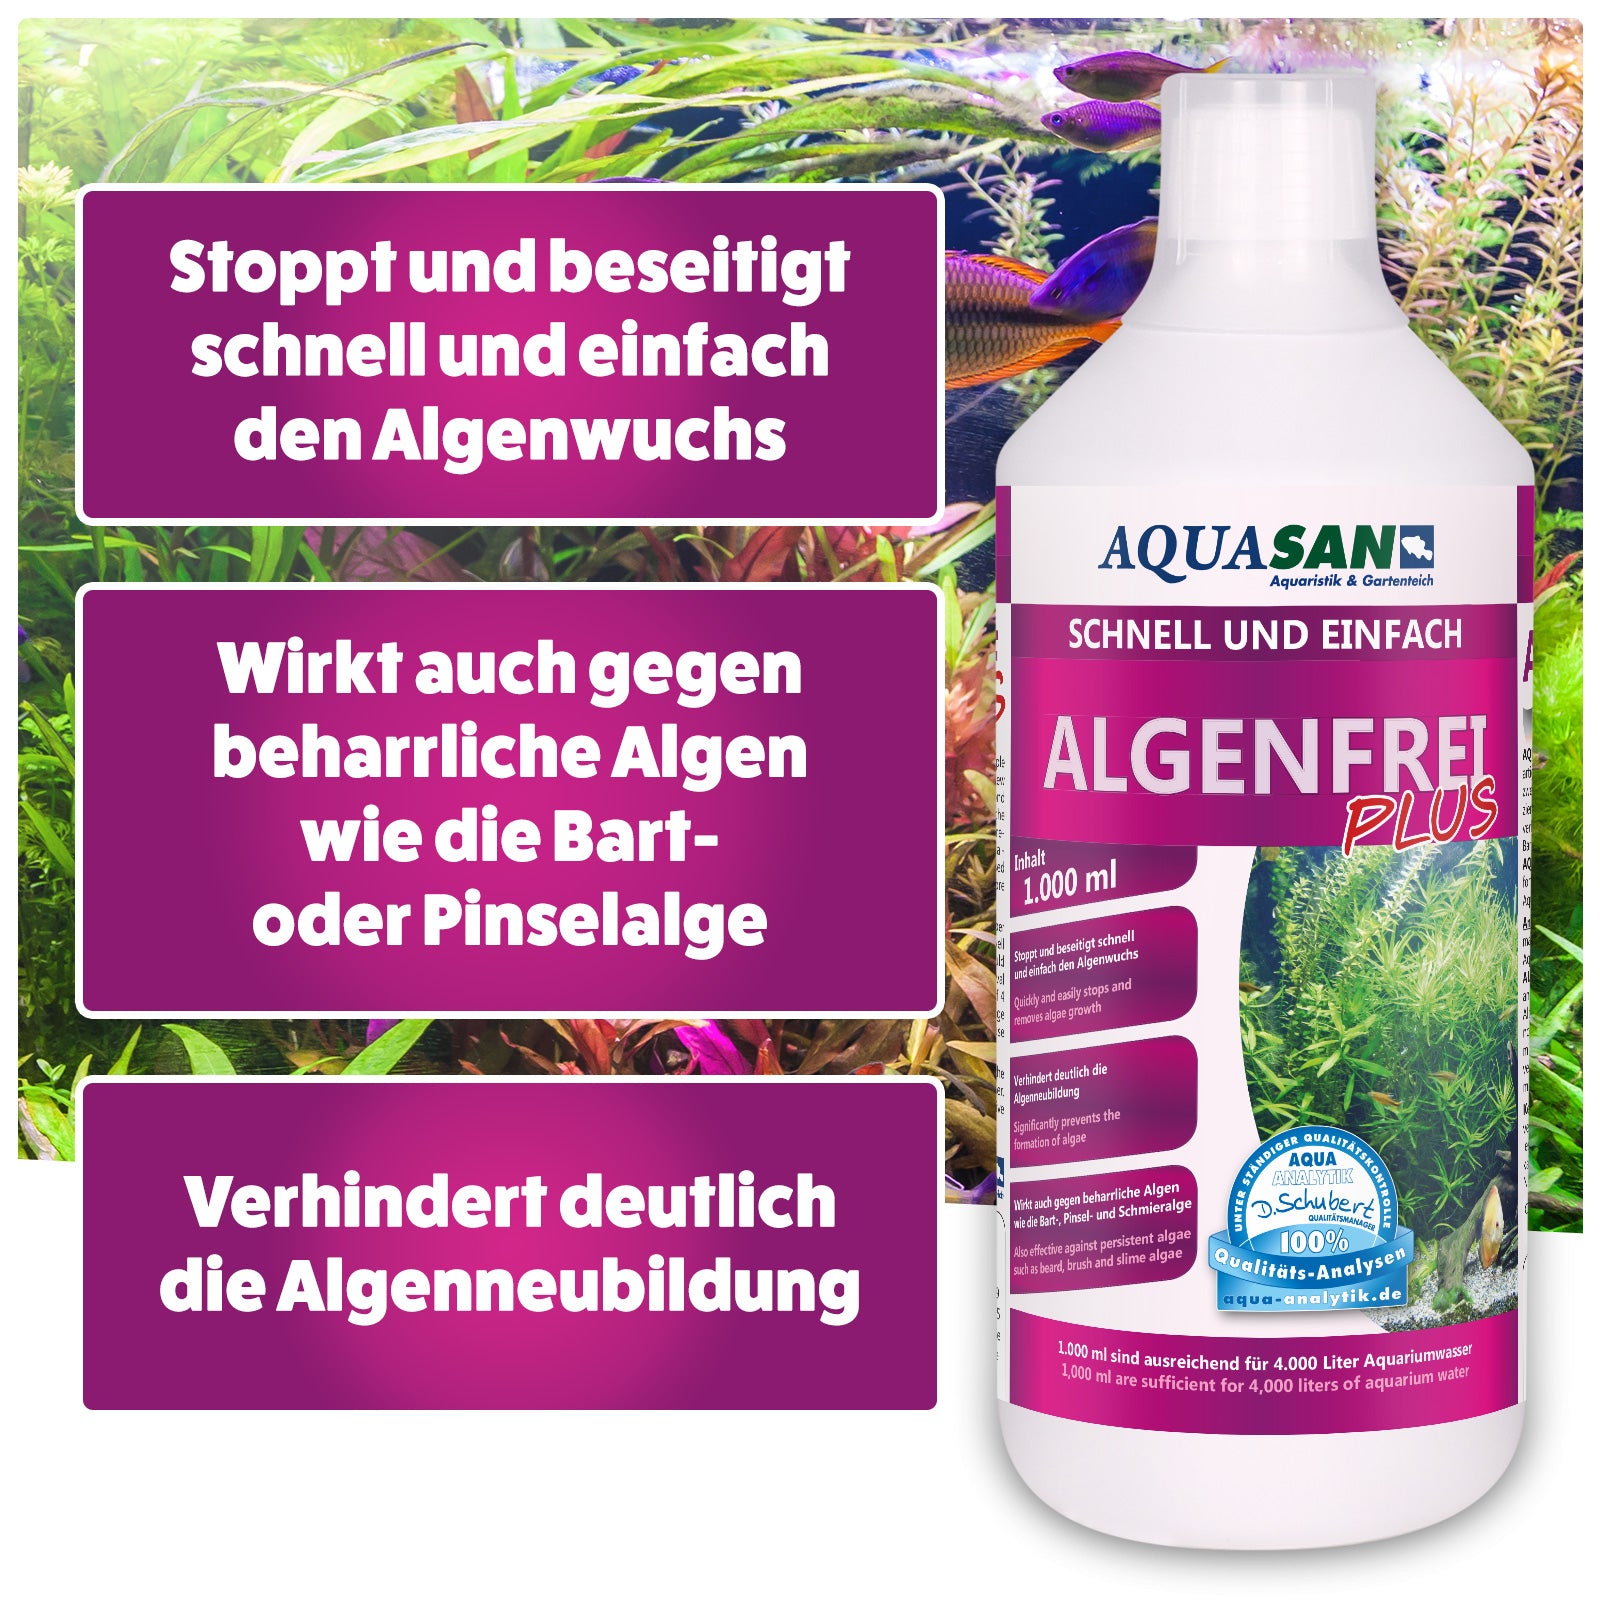 Die 3 Wirkungen von Algenfrei  gegen Algen